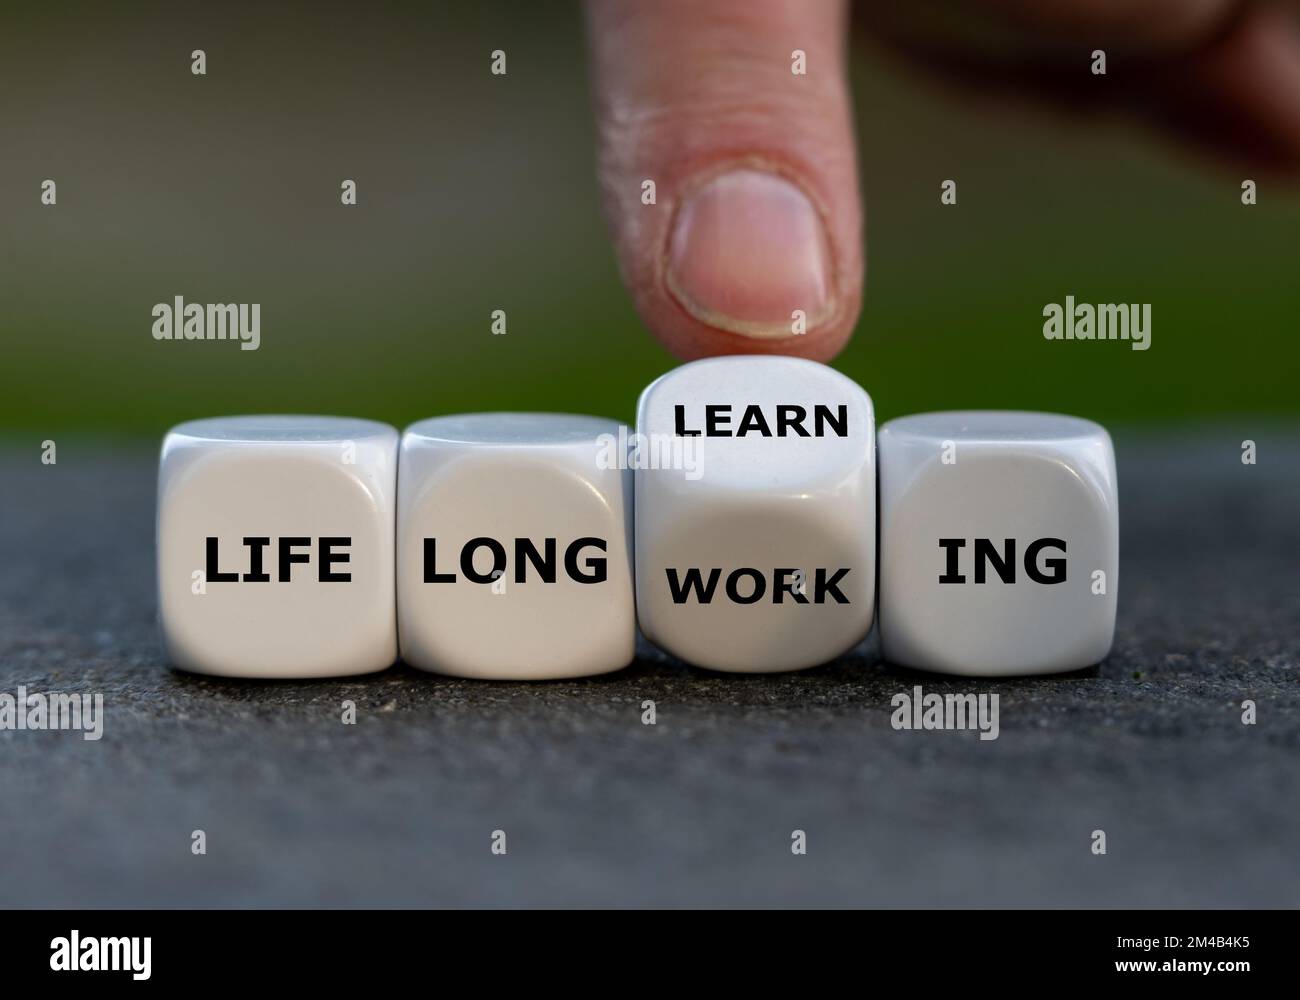 La mano gira los dados y cambia la expresión 'trabajo de por vida' a 'aprendizaje de por vida'. Foto de stock